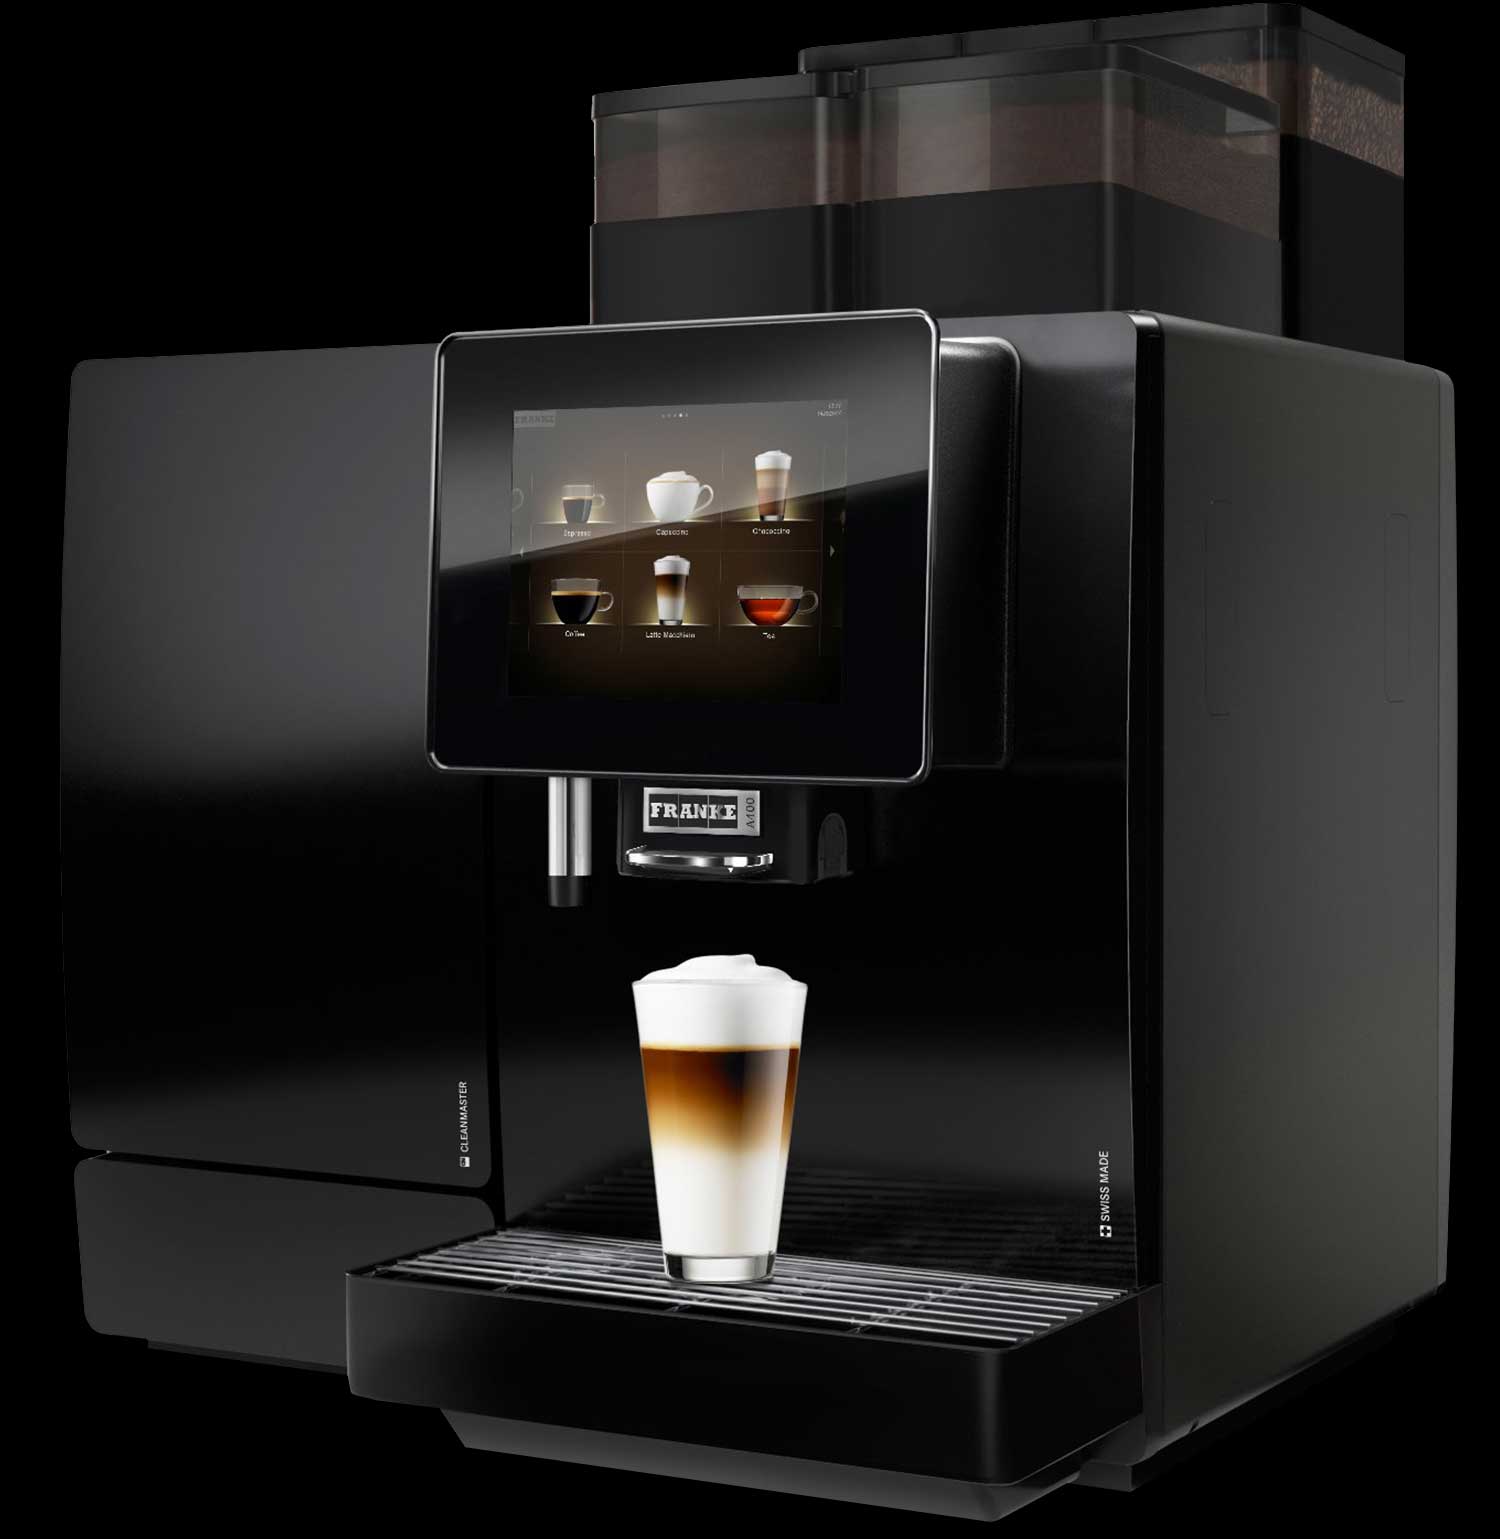 Fuldautomatisk kaffemaskine til kontor